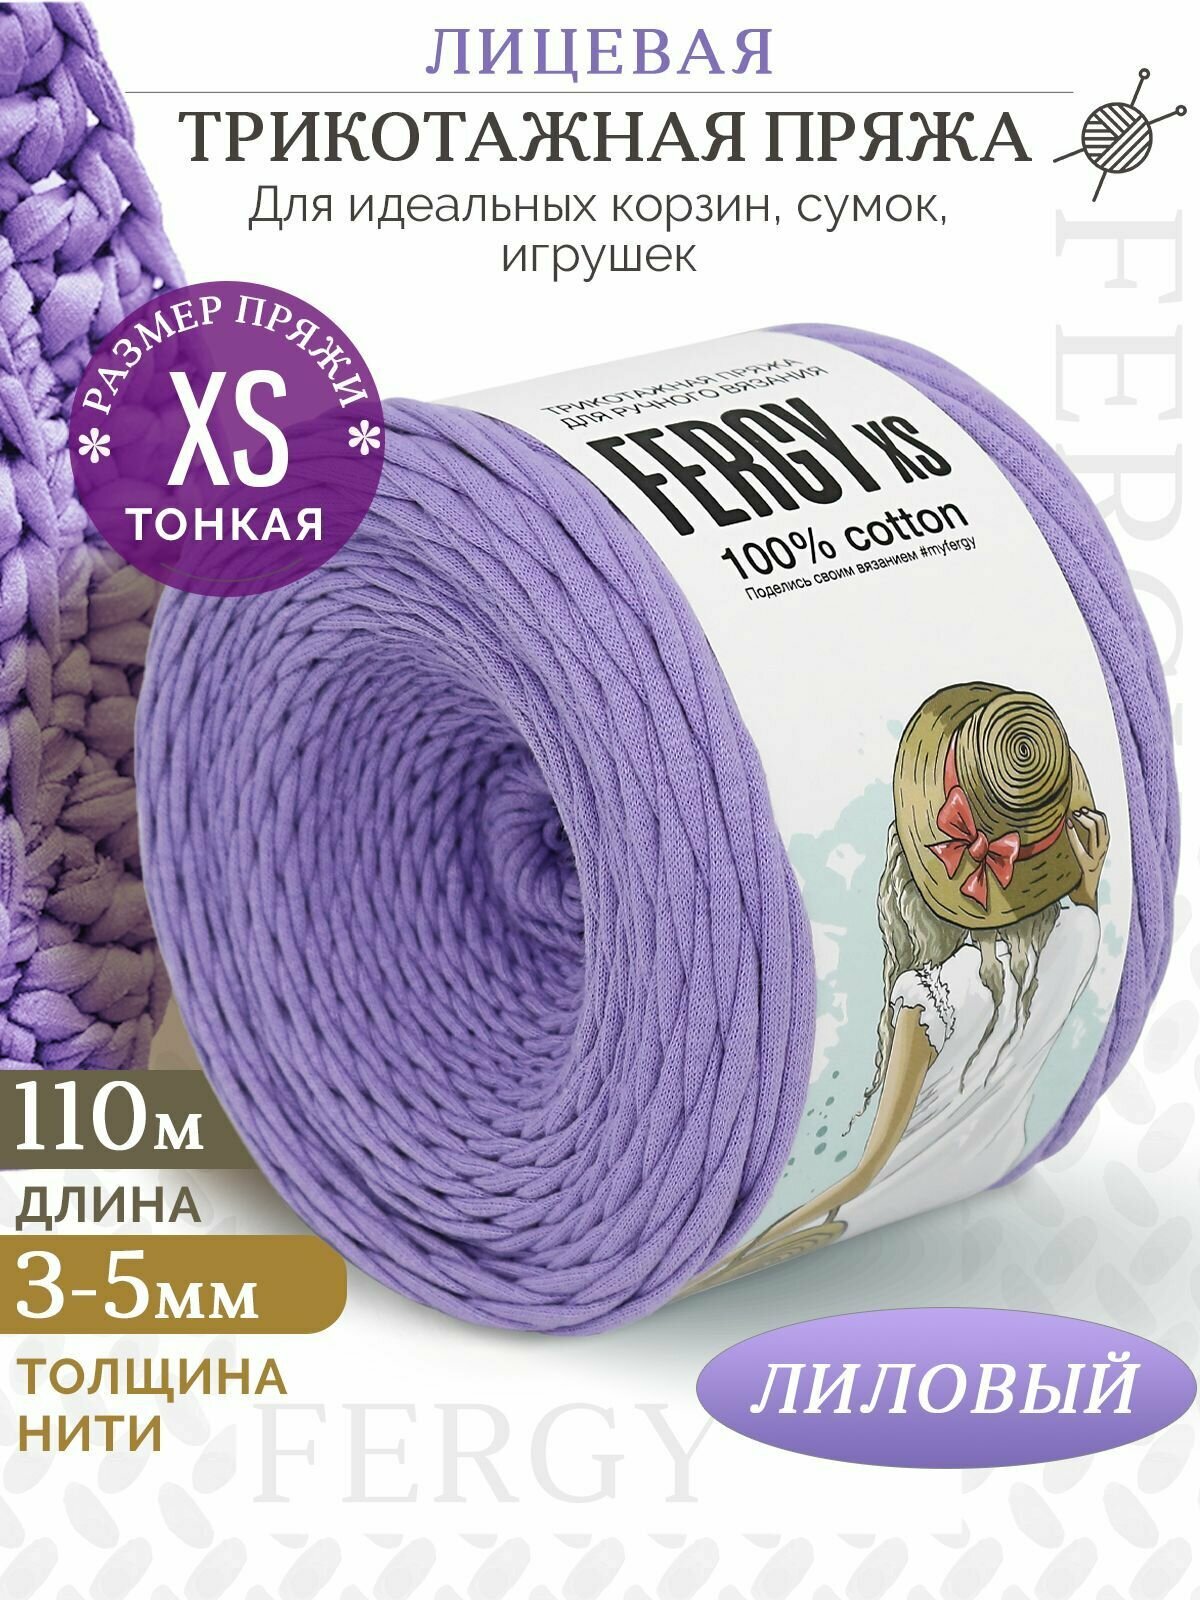 Трикотажная пряжа для вязания / Лицевая / 110м / XS 3-5мм / лиловый